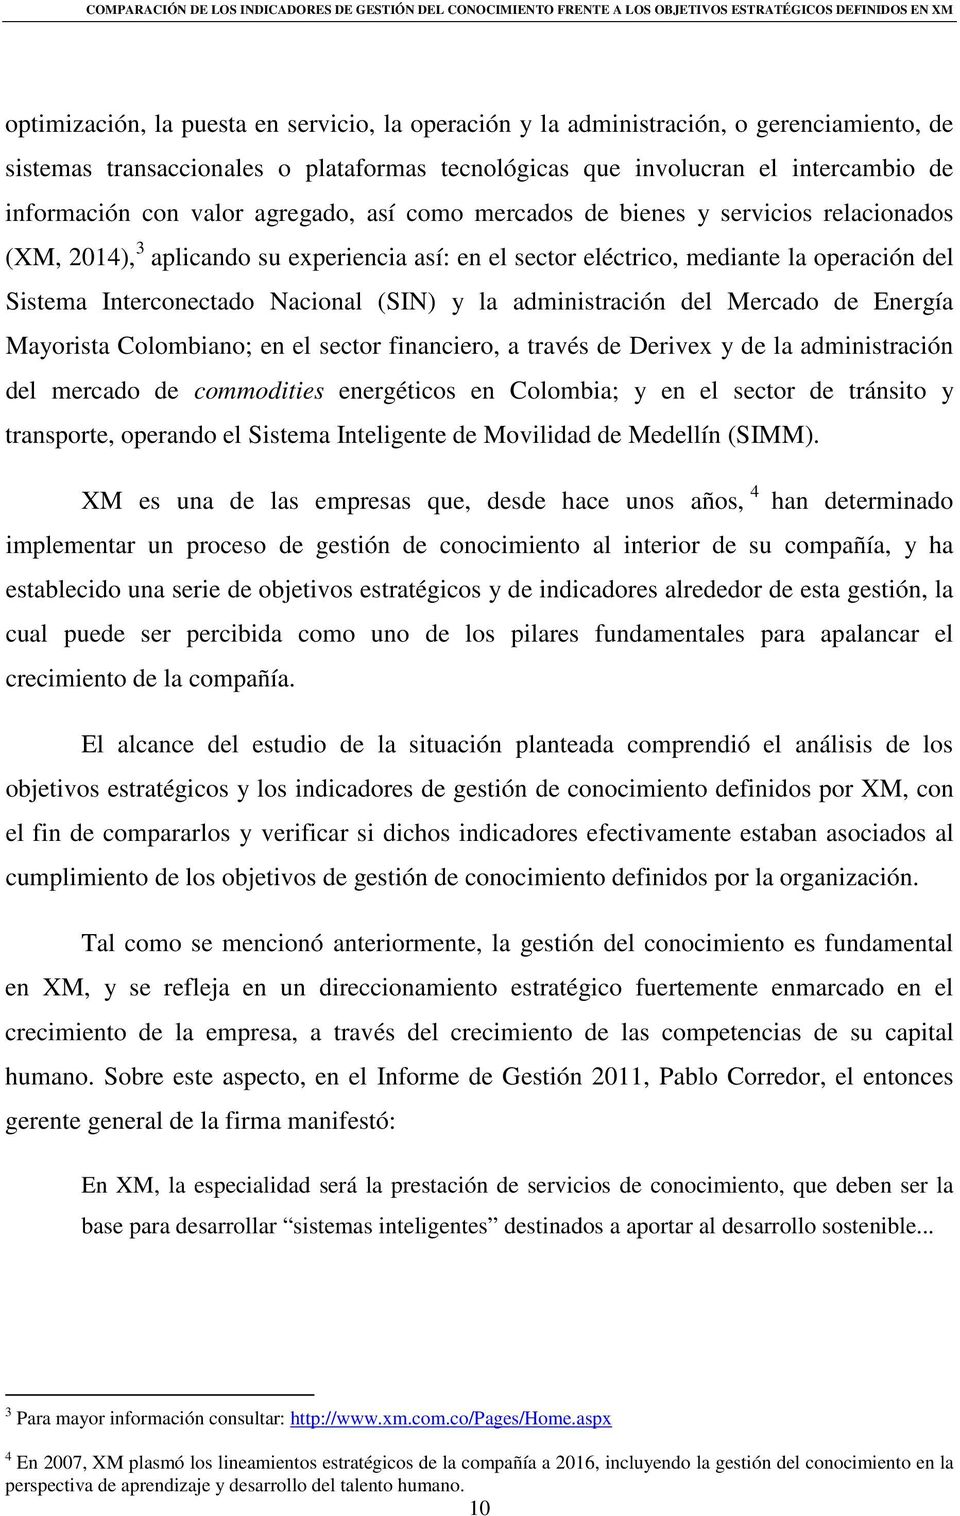 administración del Mercado de Energía Mayorista Colombiano; en el sector financiero, a través de Derivex y de la administración del mercado de commodities energéticos en Colombia; y en el sector de